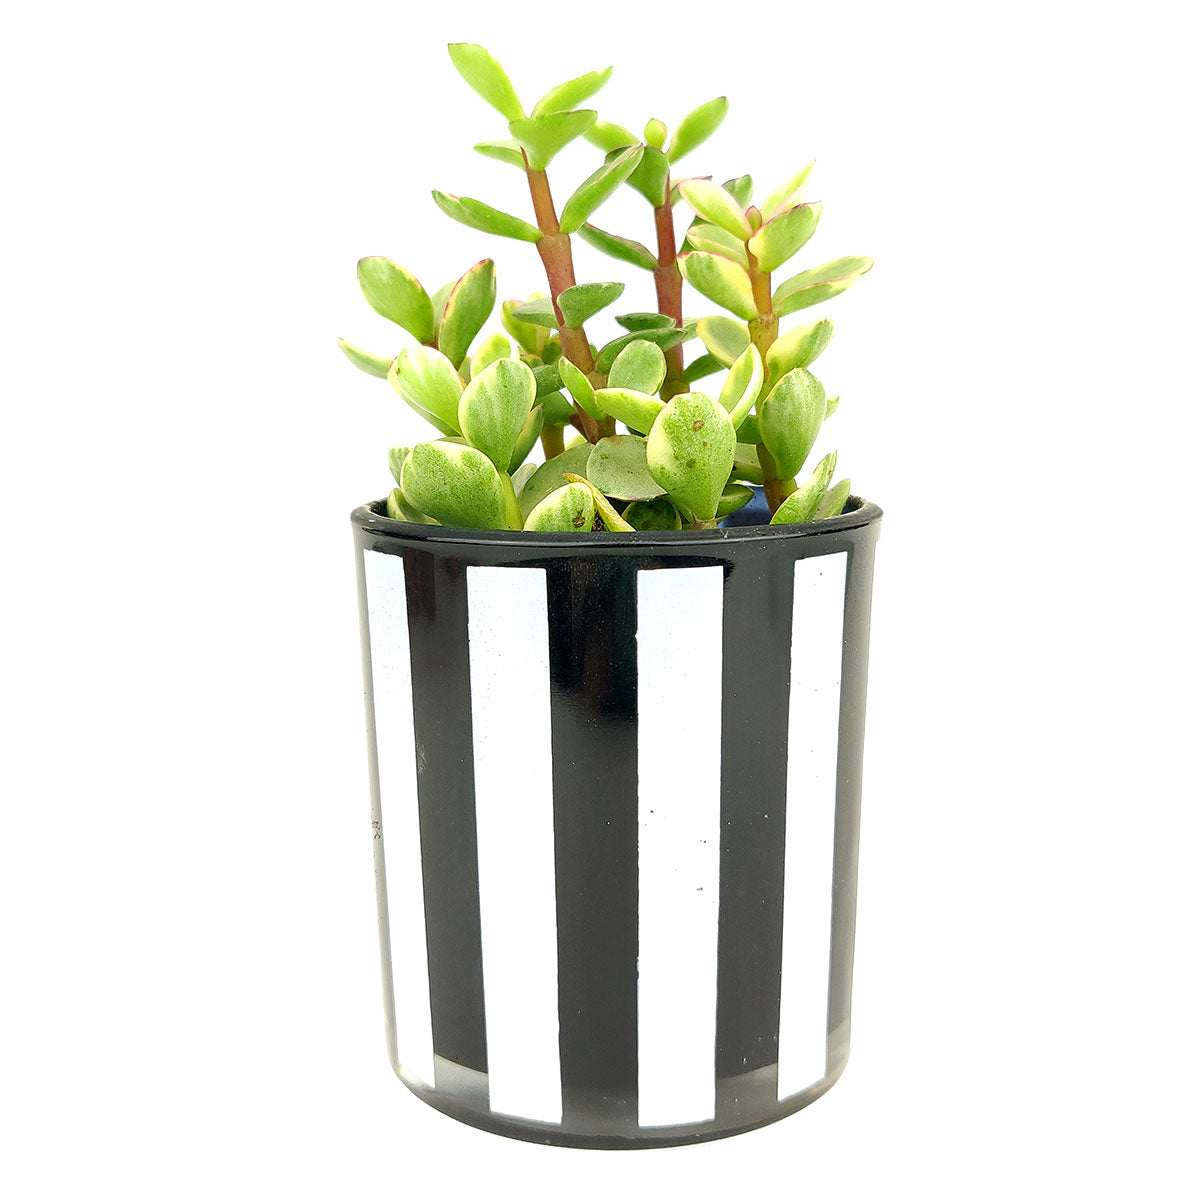 Black and White Vertical Stripes Pot, Pot for sale, Mini pot for succulent, Succulent pot decor ideas, Flower pot for sale, glass pots for planting, succulent gift for holiday